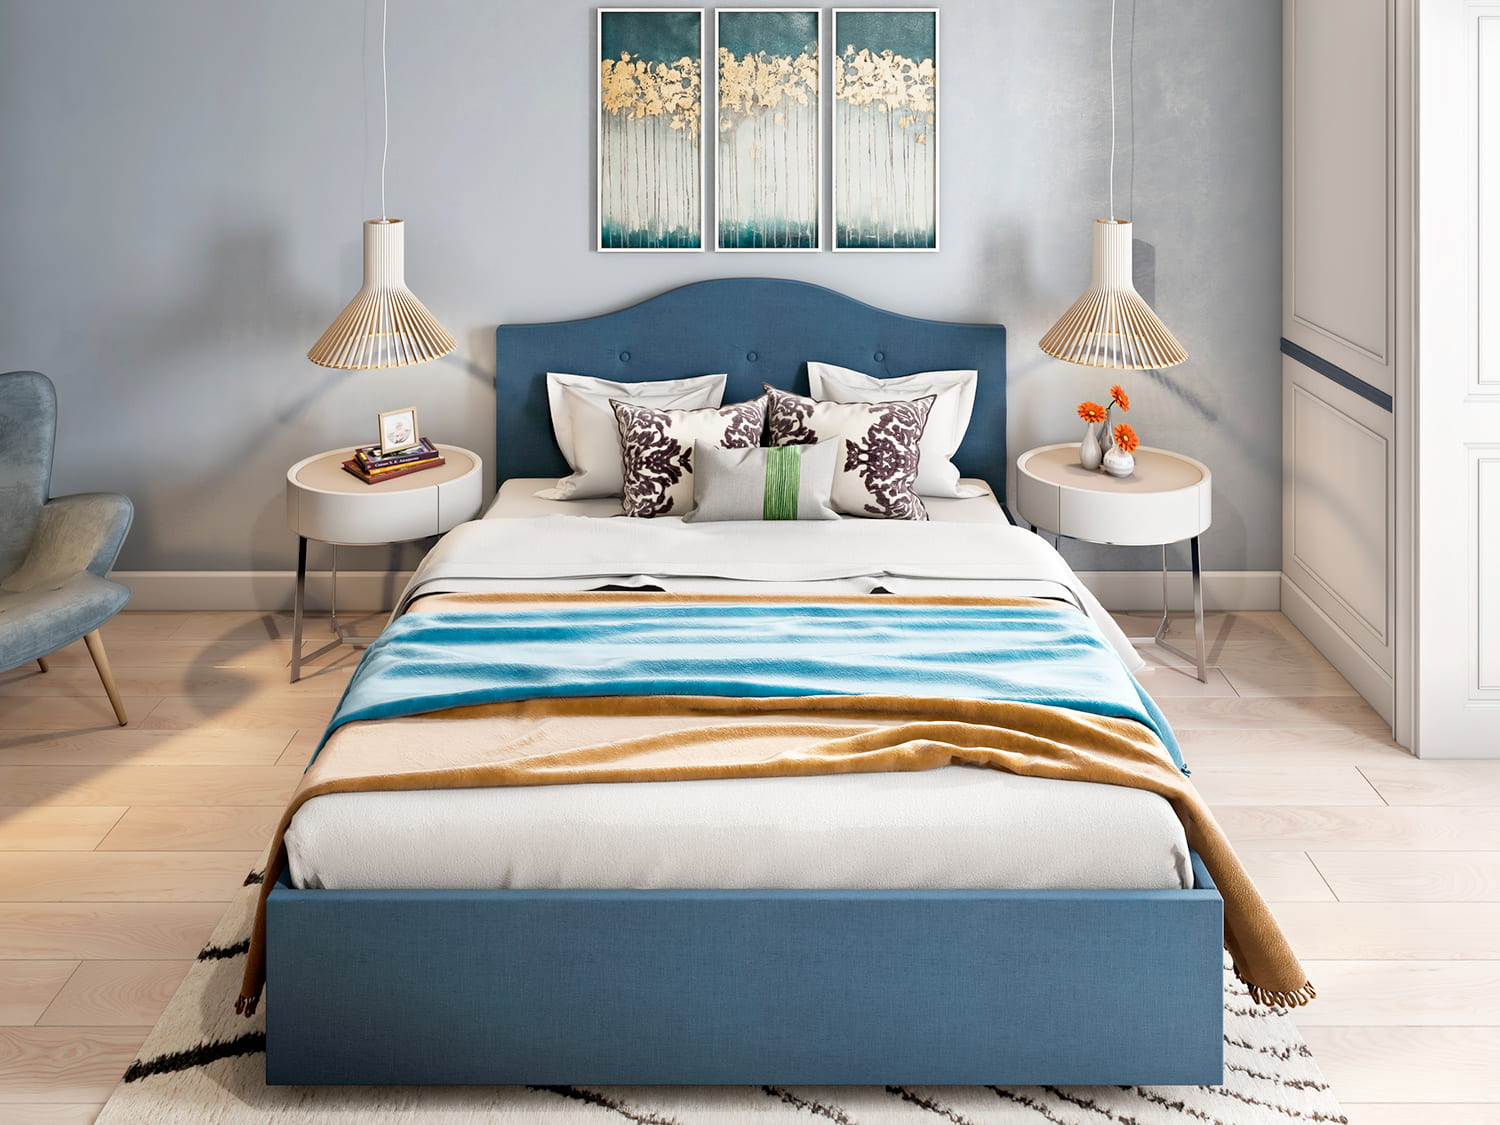 Кровать Lerici - строгая и стильная кровать классического стиля с подъемным механизмом